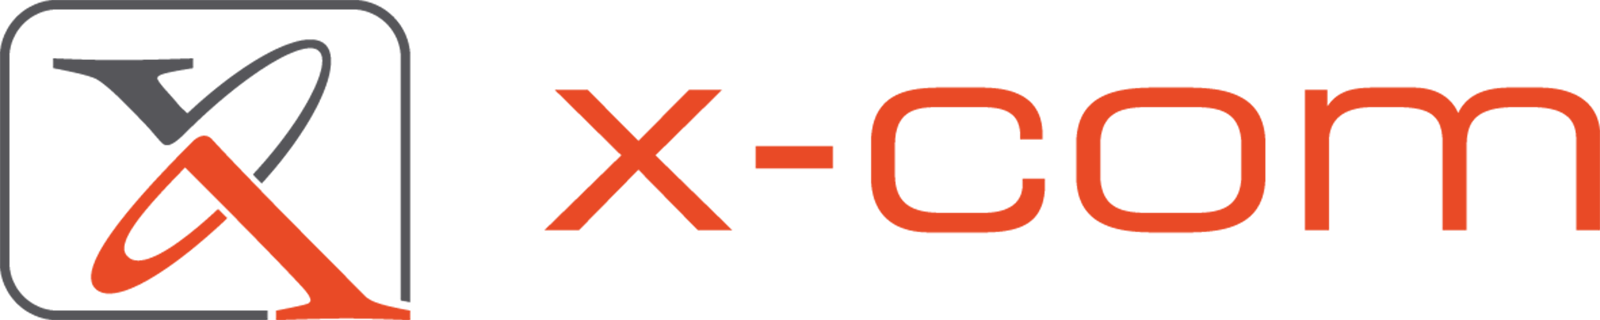 Logo X-com